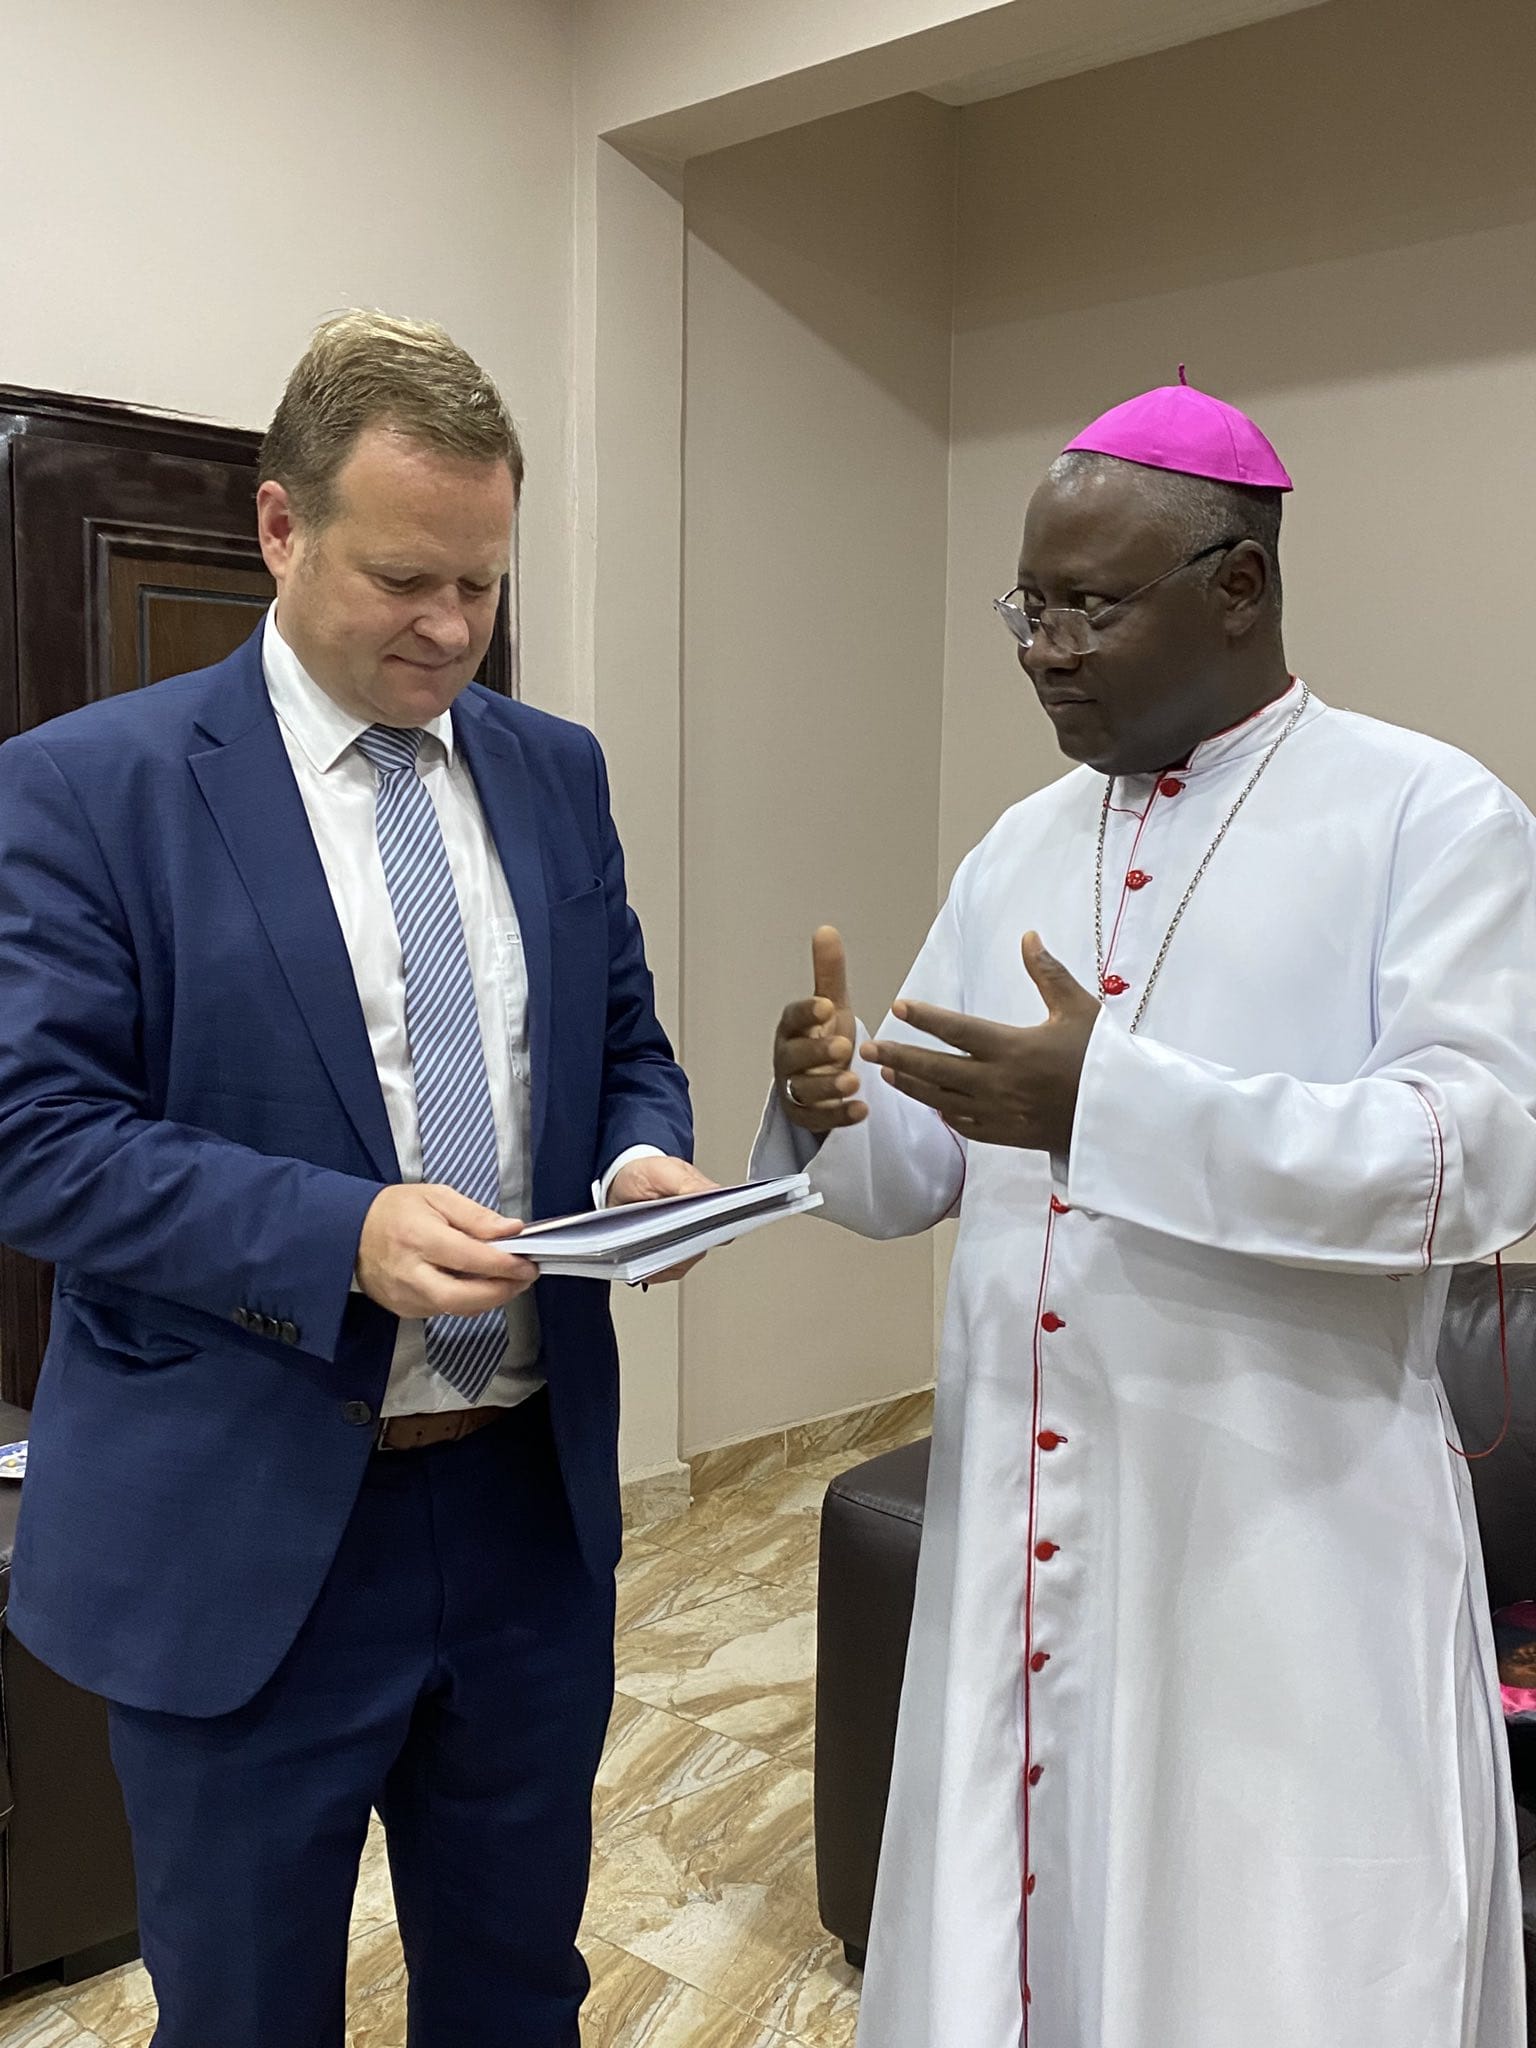 Frank Schwabe, Beauftragter der Bundesregierung für Religions- und Weltanschauungsfreiheit, während seiner Reise nach Nigeria im August 2022